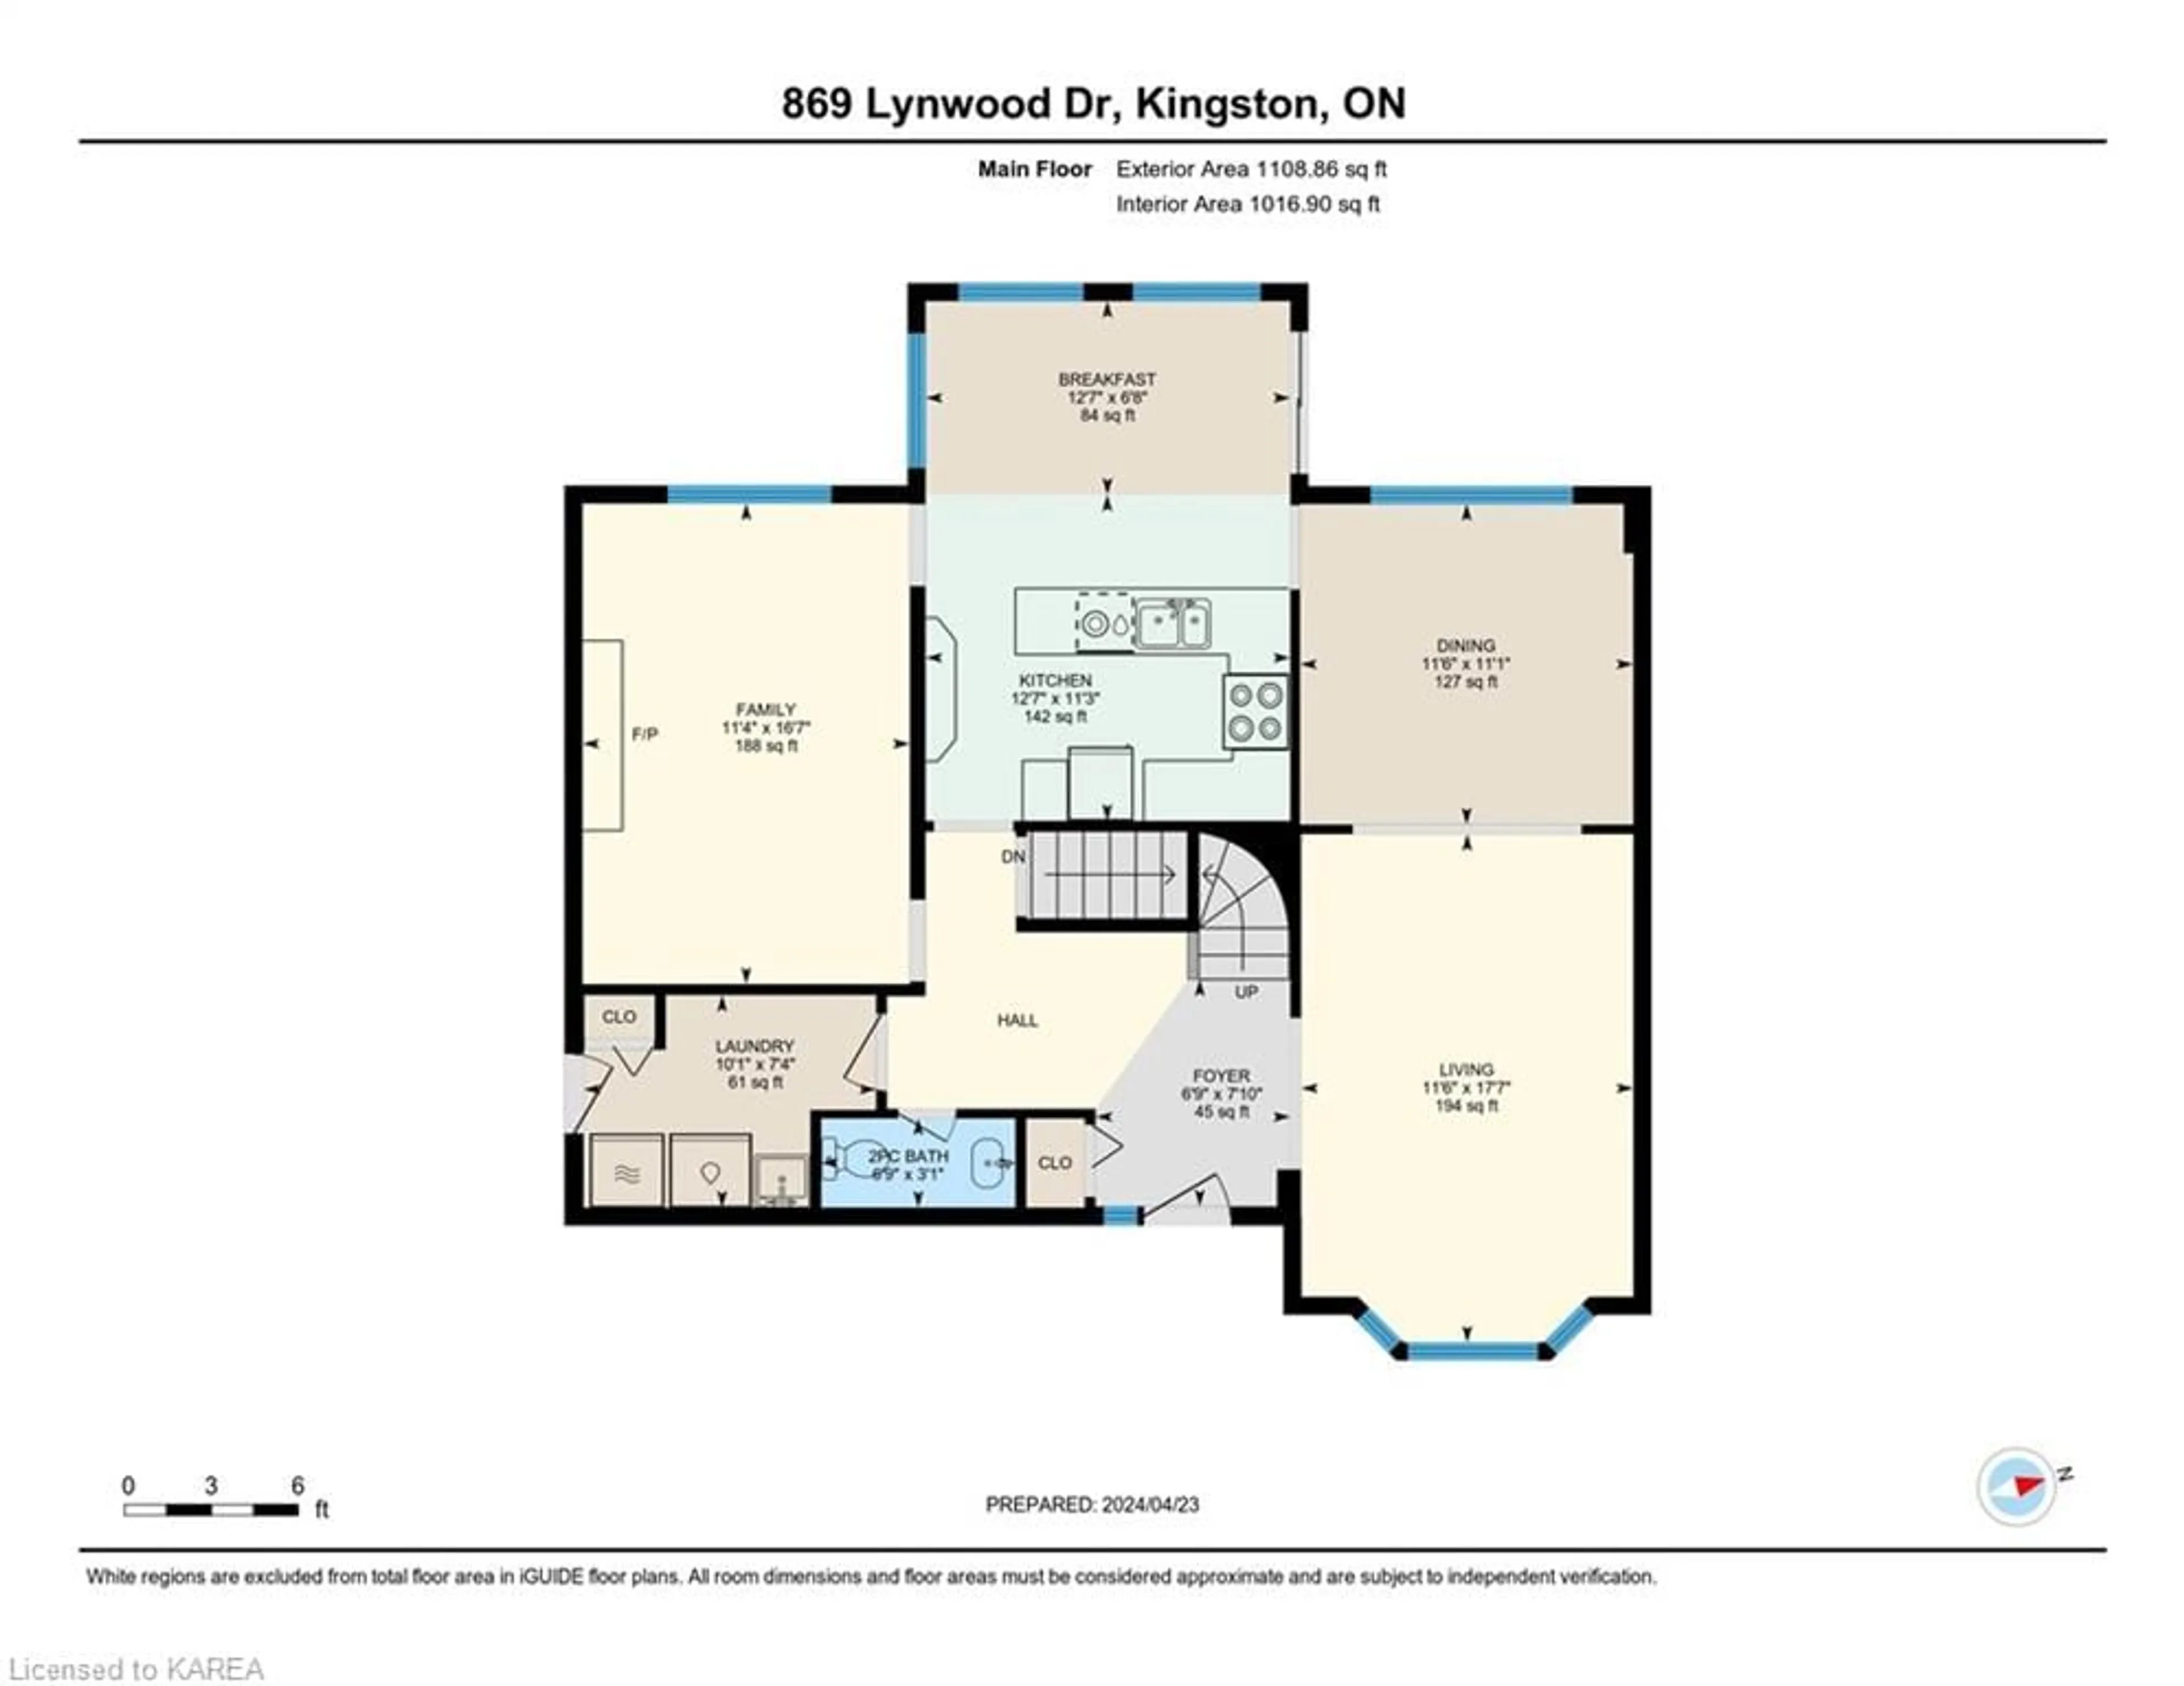 Floor plan for 869 Lynwood Dr, Kingston Ontario K7P 2K6